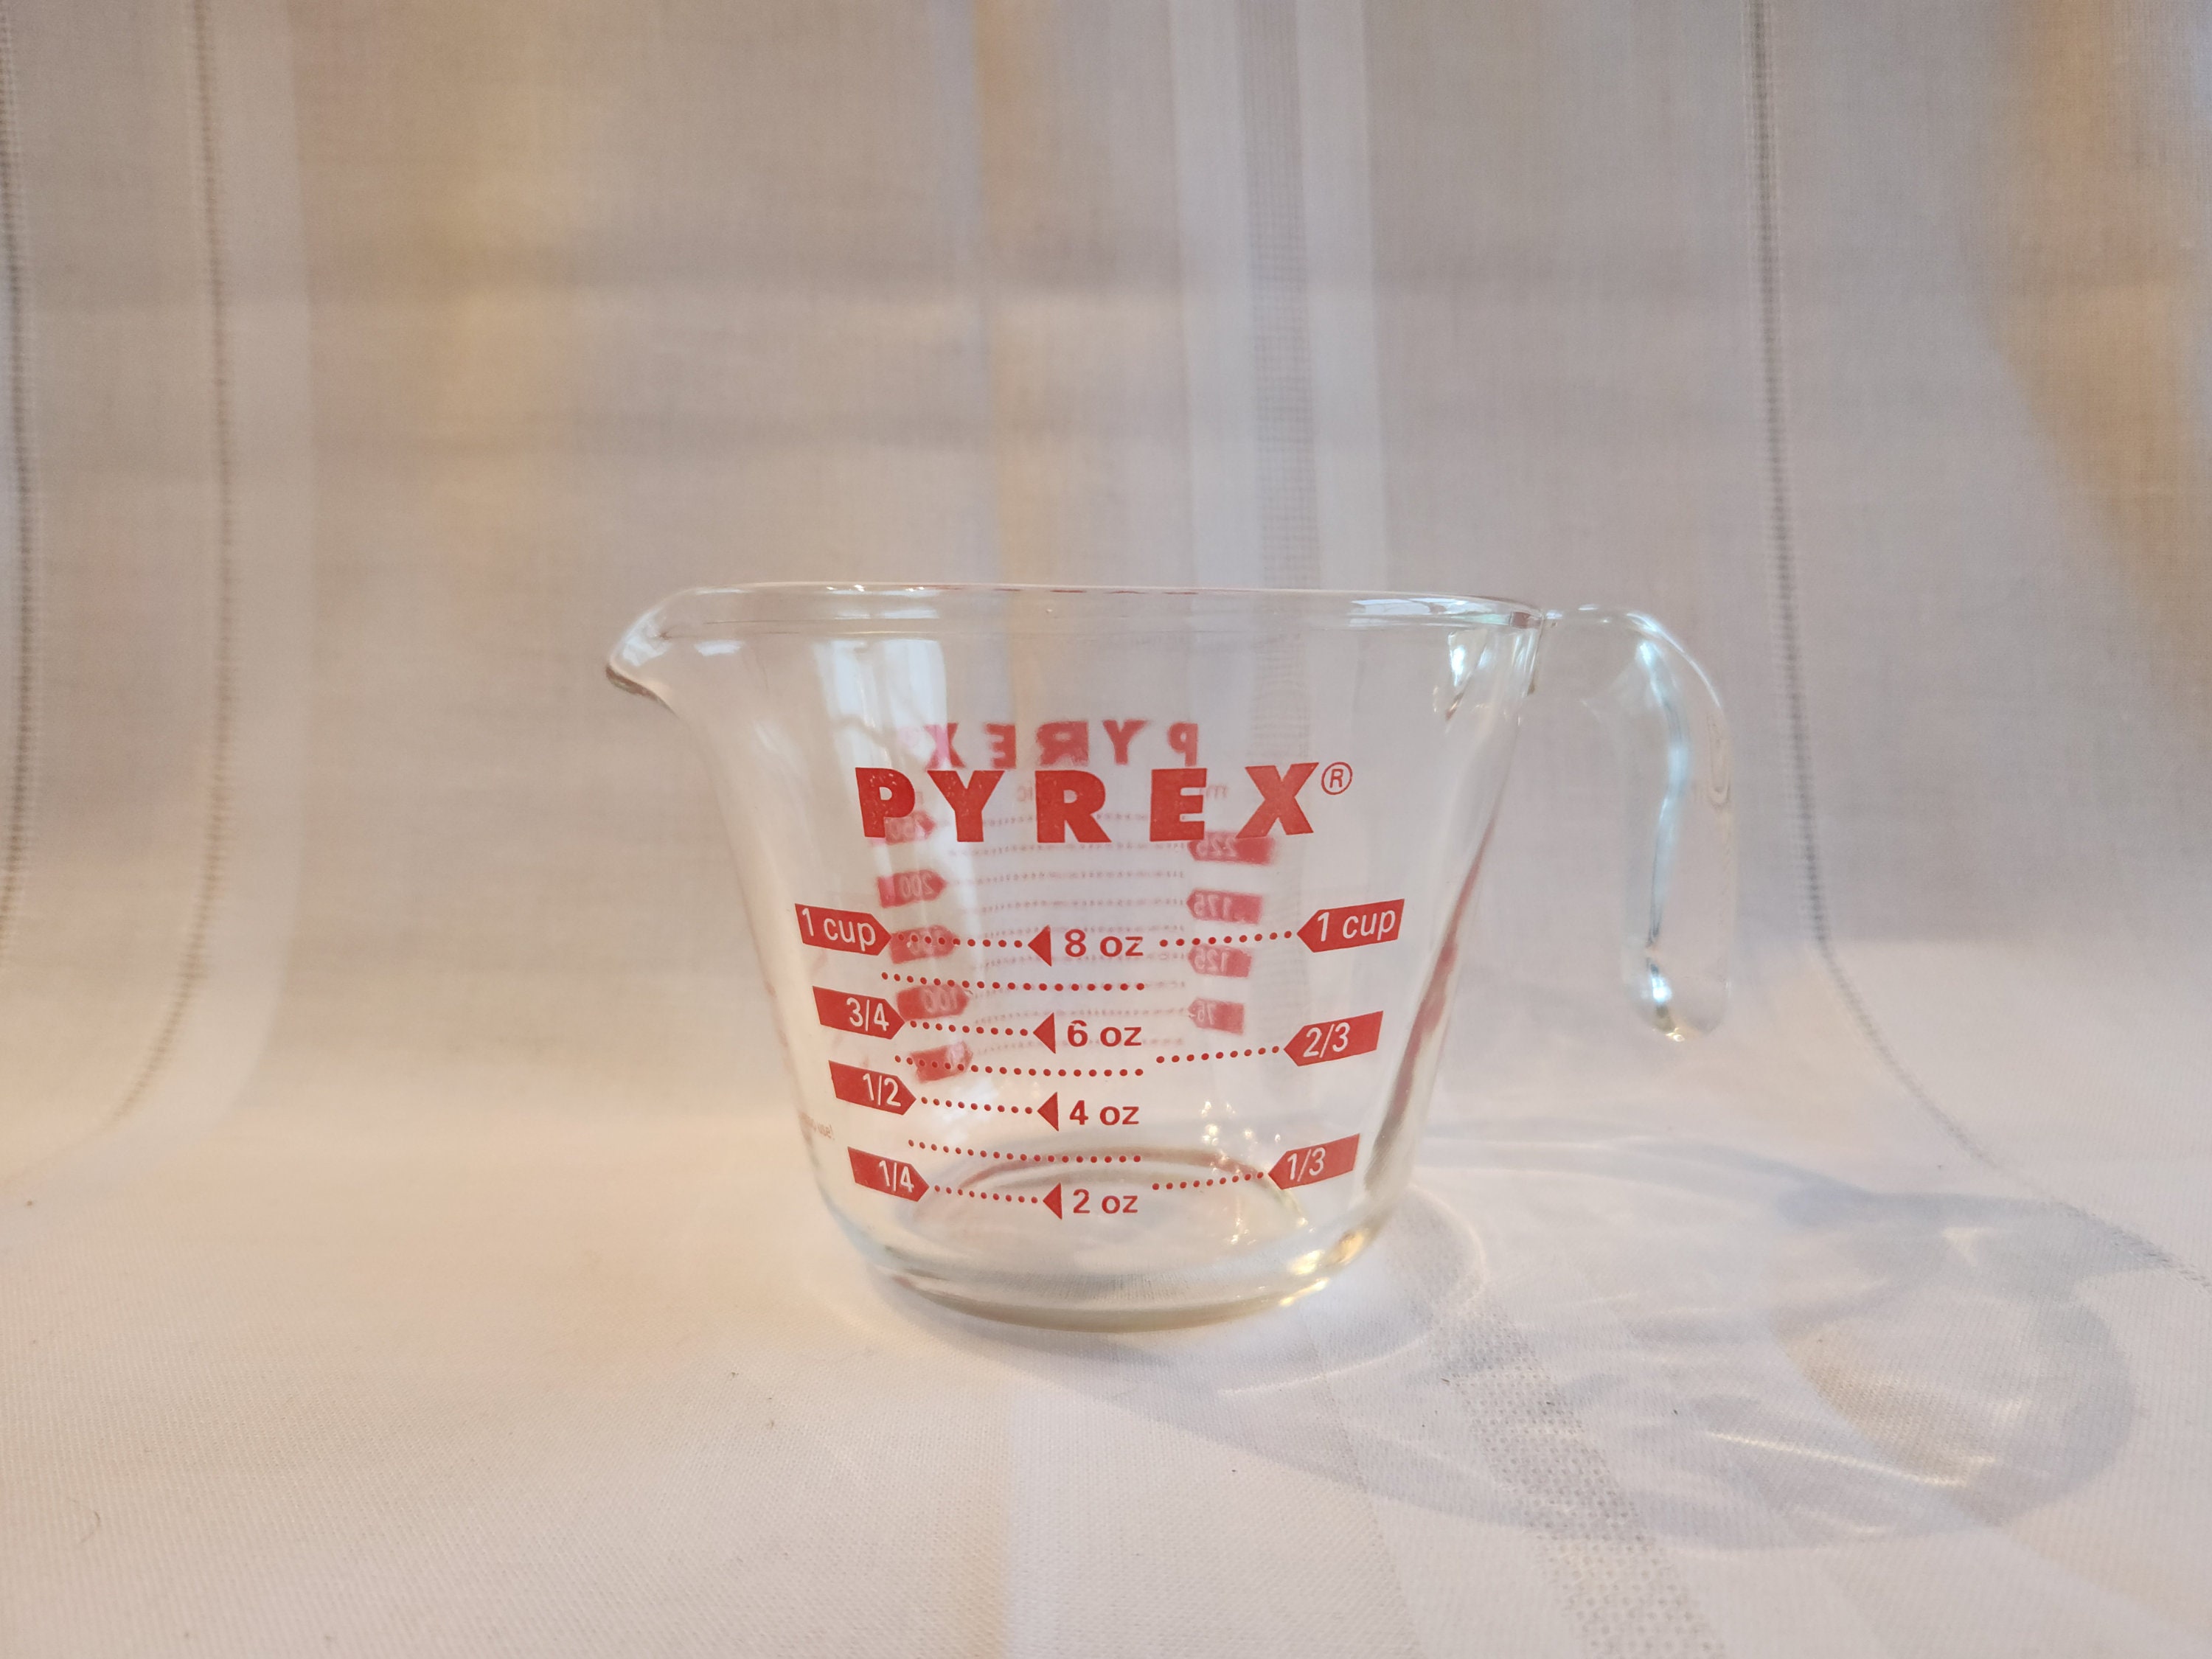 Vintage Pyrex 4 Cup Measuring Cup Glass With Handle and Pour Spout 1 Quart  Pyrex Batter Bowl With Spout 